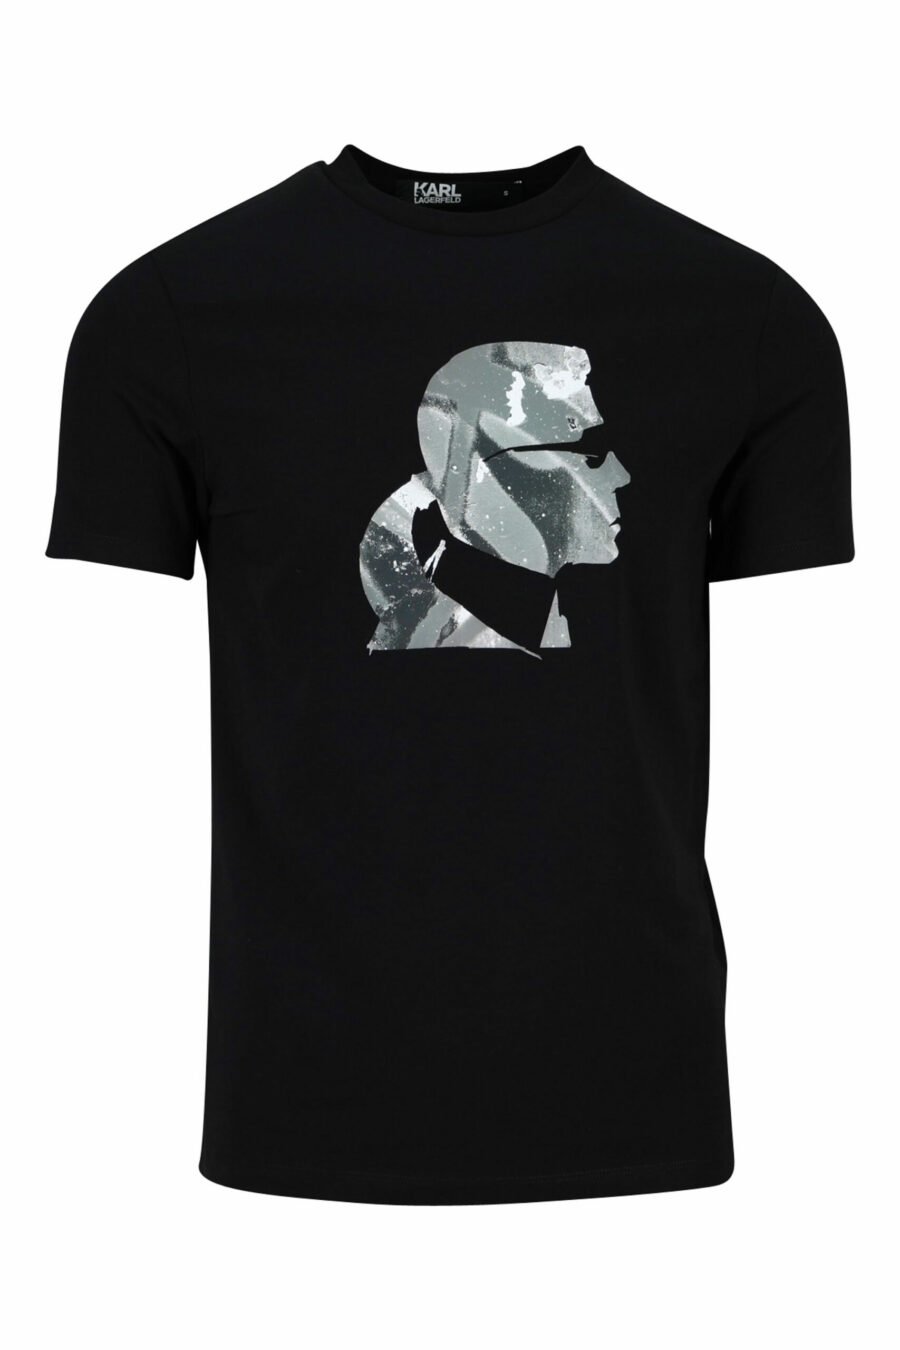 T-shirt preta com perfil de camuflagem "karl" - 4062226401906 scaled